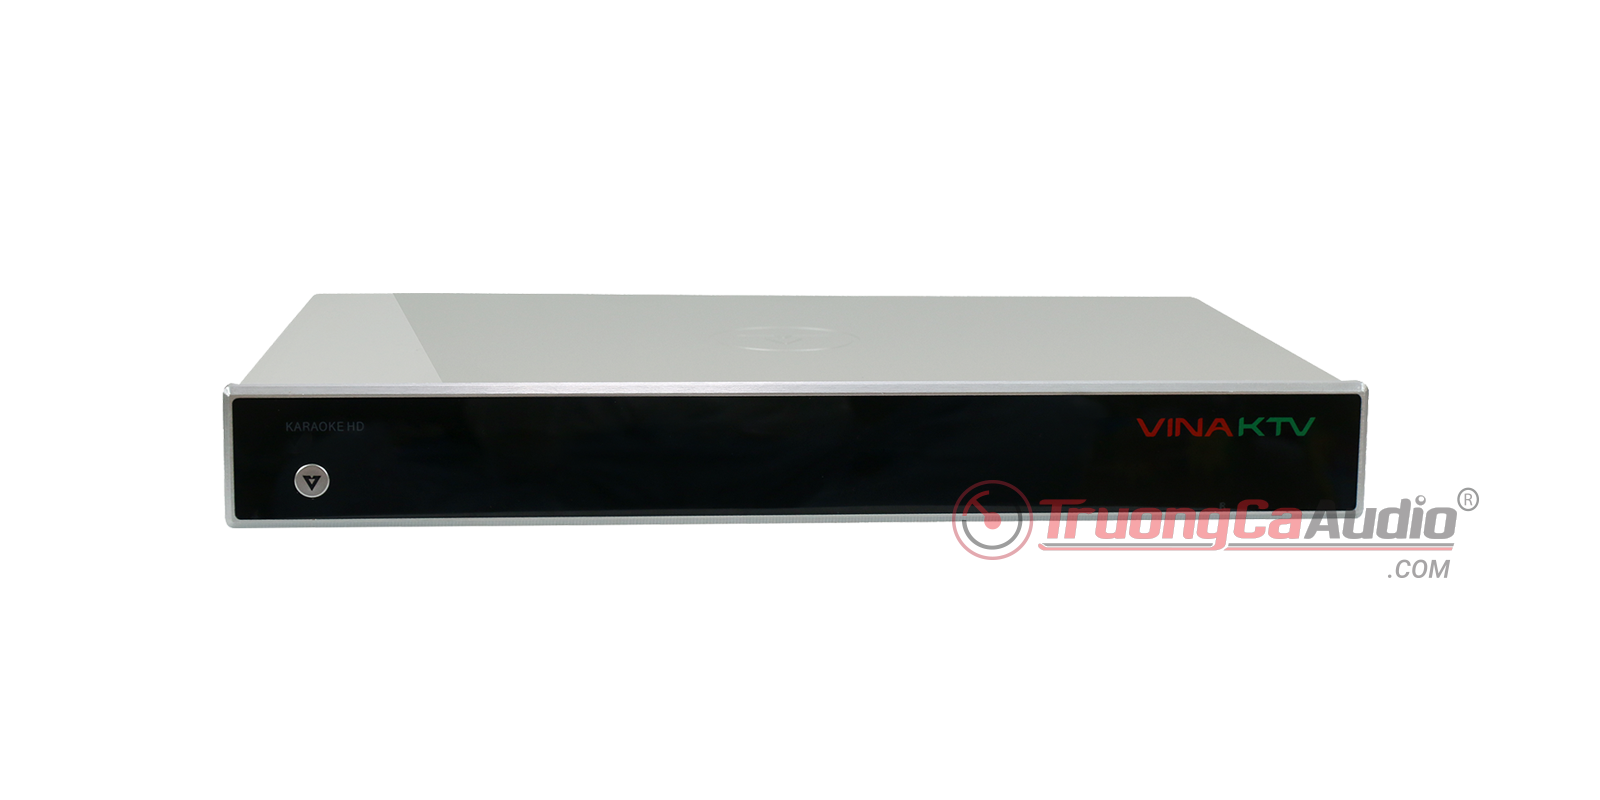 Đầu VOD V6++ là dòng đầu karaoke cao cấp, dành cho những dàn karaoke gia đình và kinh doanh